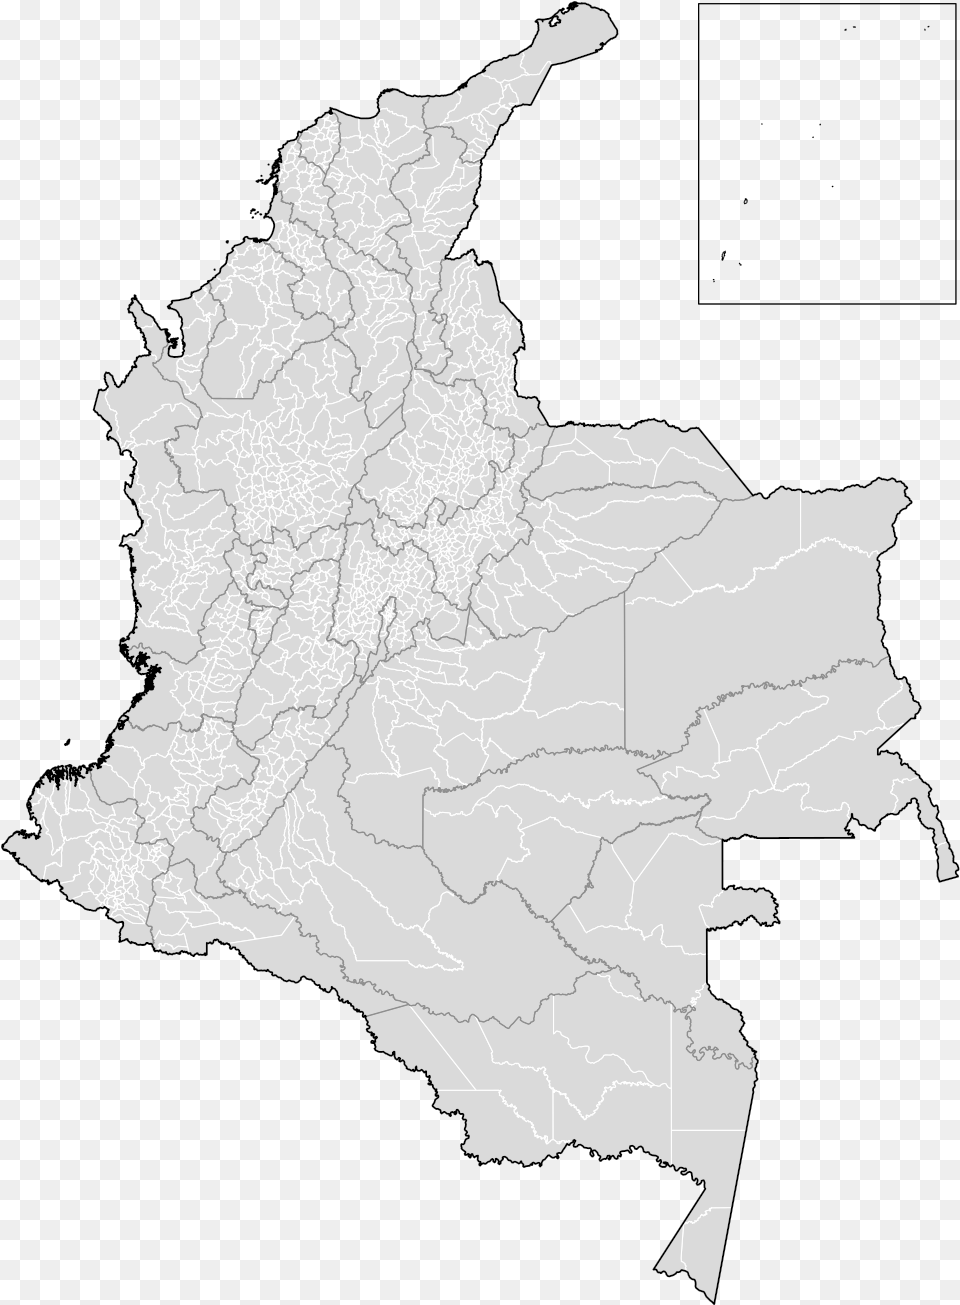 Mapa De Colombia Division Municipal De Colombia, Atlas, Chart, Diagram, Plot Free Png